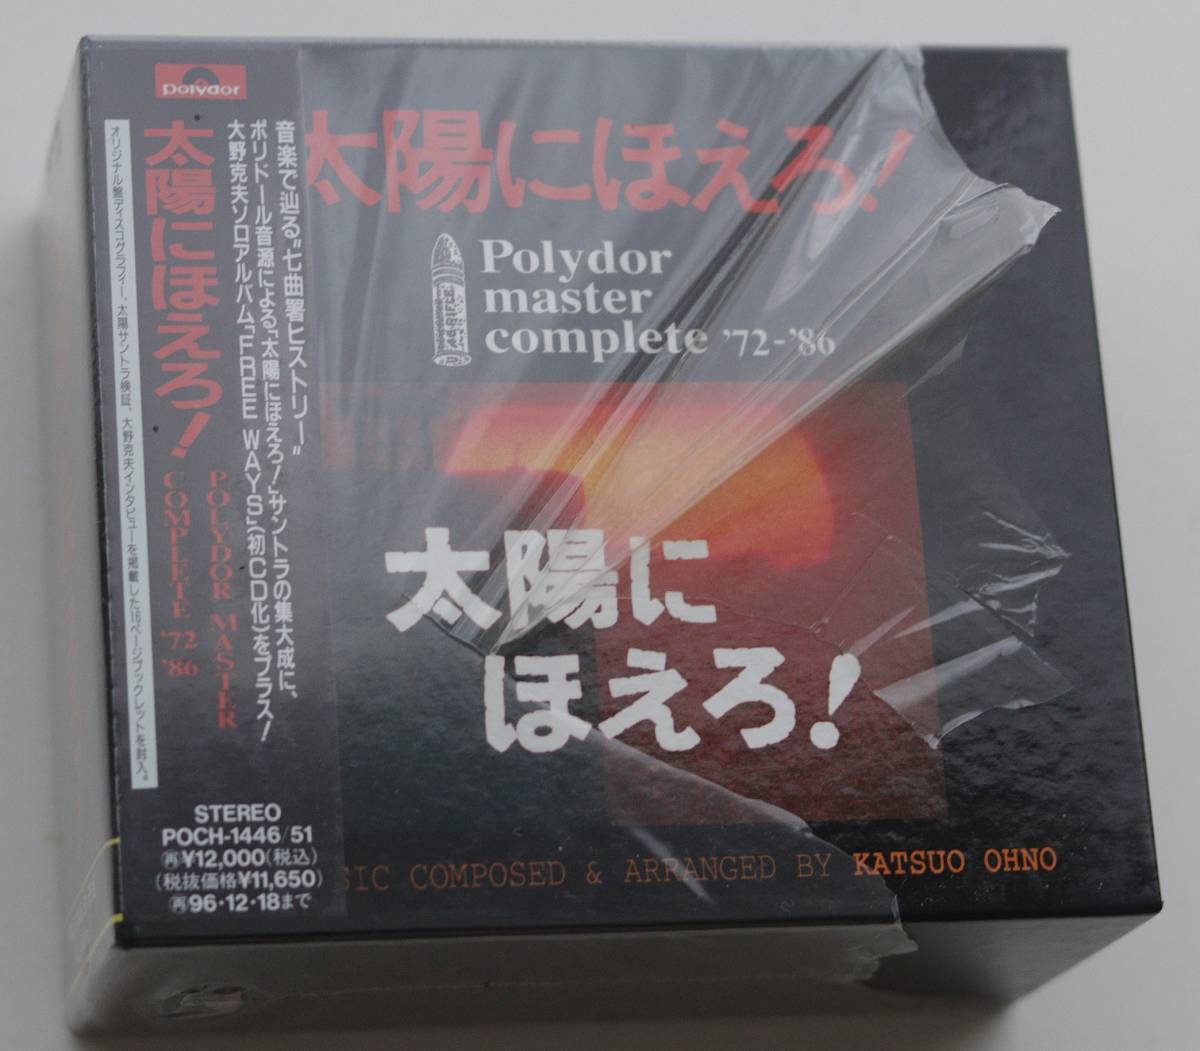 太陽にほえろ！ Polydor master complete '72-'86　CD6枚組BOX_画像1